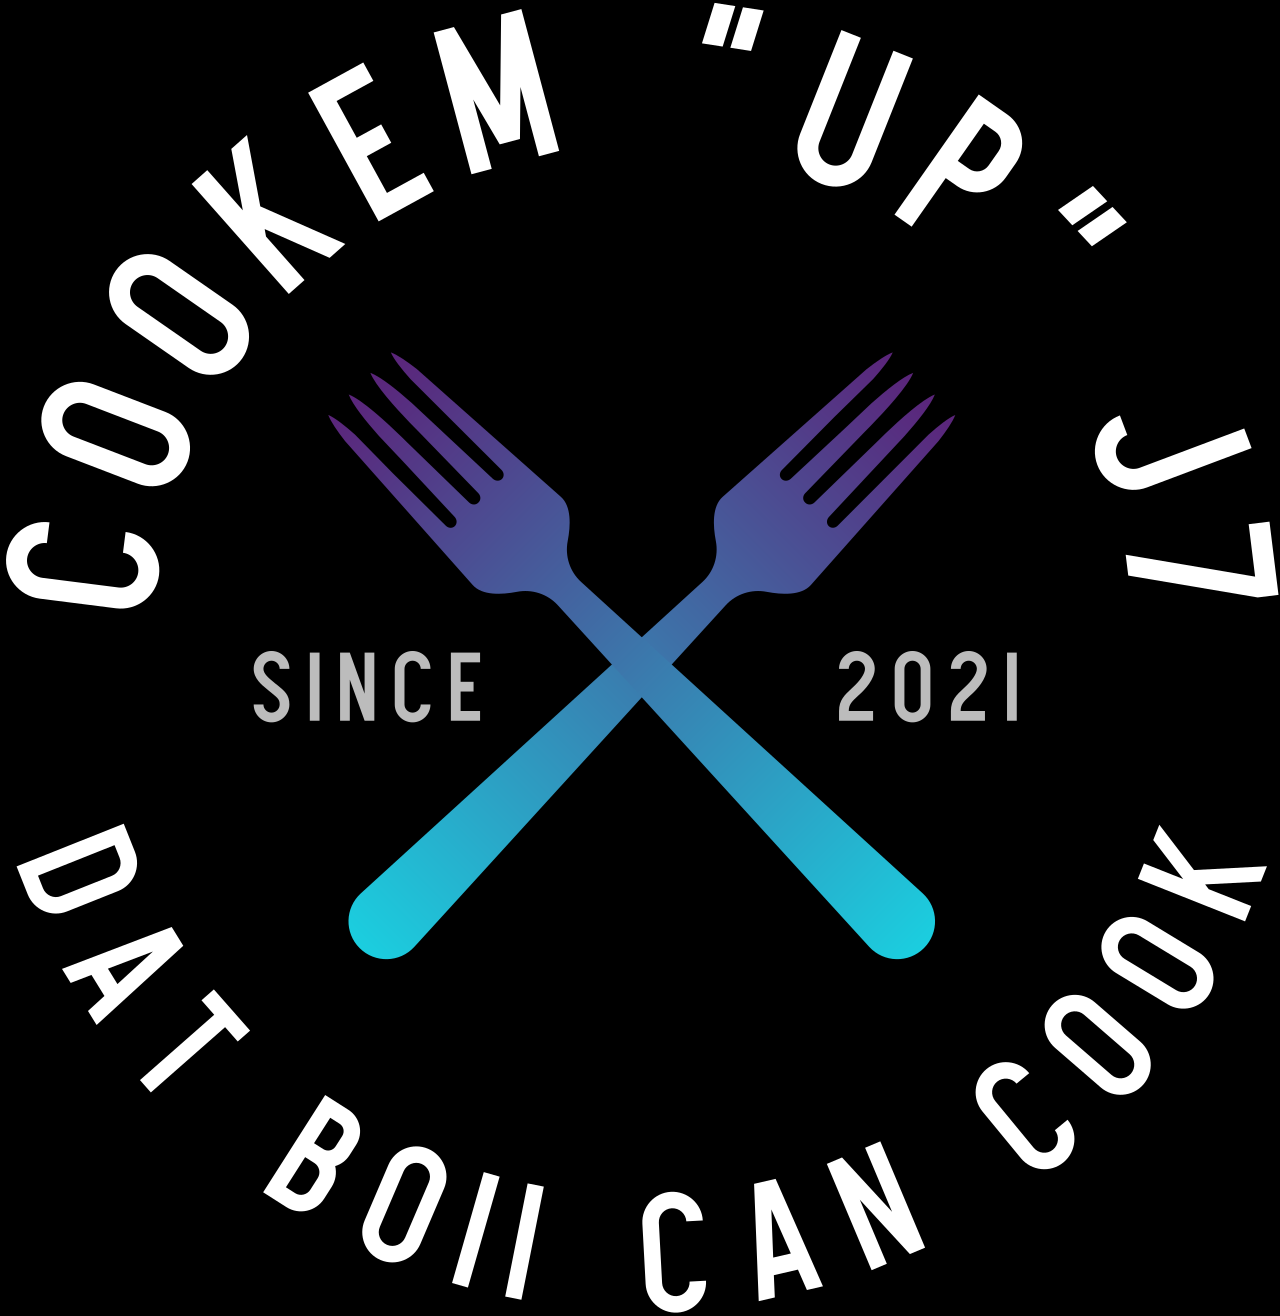 Cookem “up” J7's logo